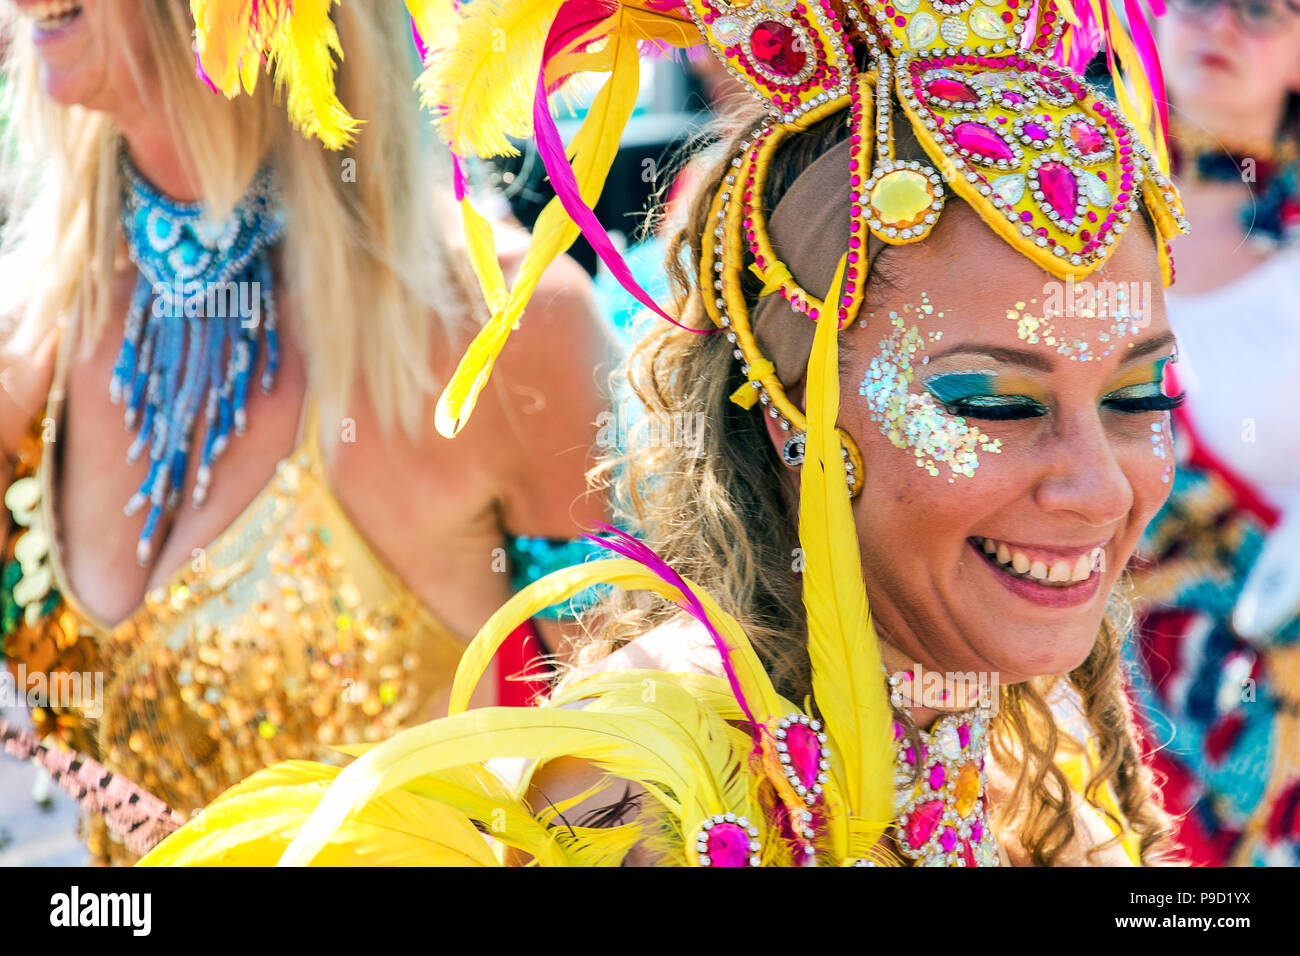 Liverpool, Royaume-Uni - 14 juillet 2018 : Le Festival de Brazilica est la célébration de la culture brésilienne au Royaume-Uni qui a lieu chaque année Banque D'Images